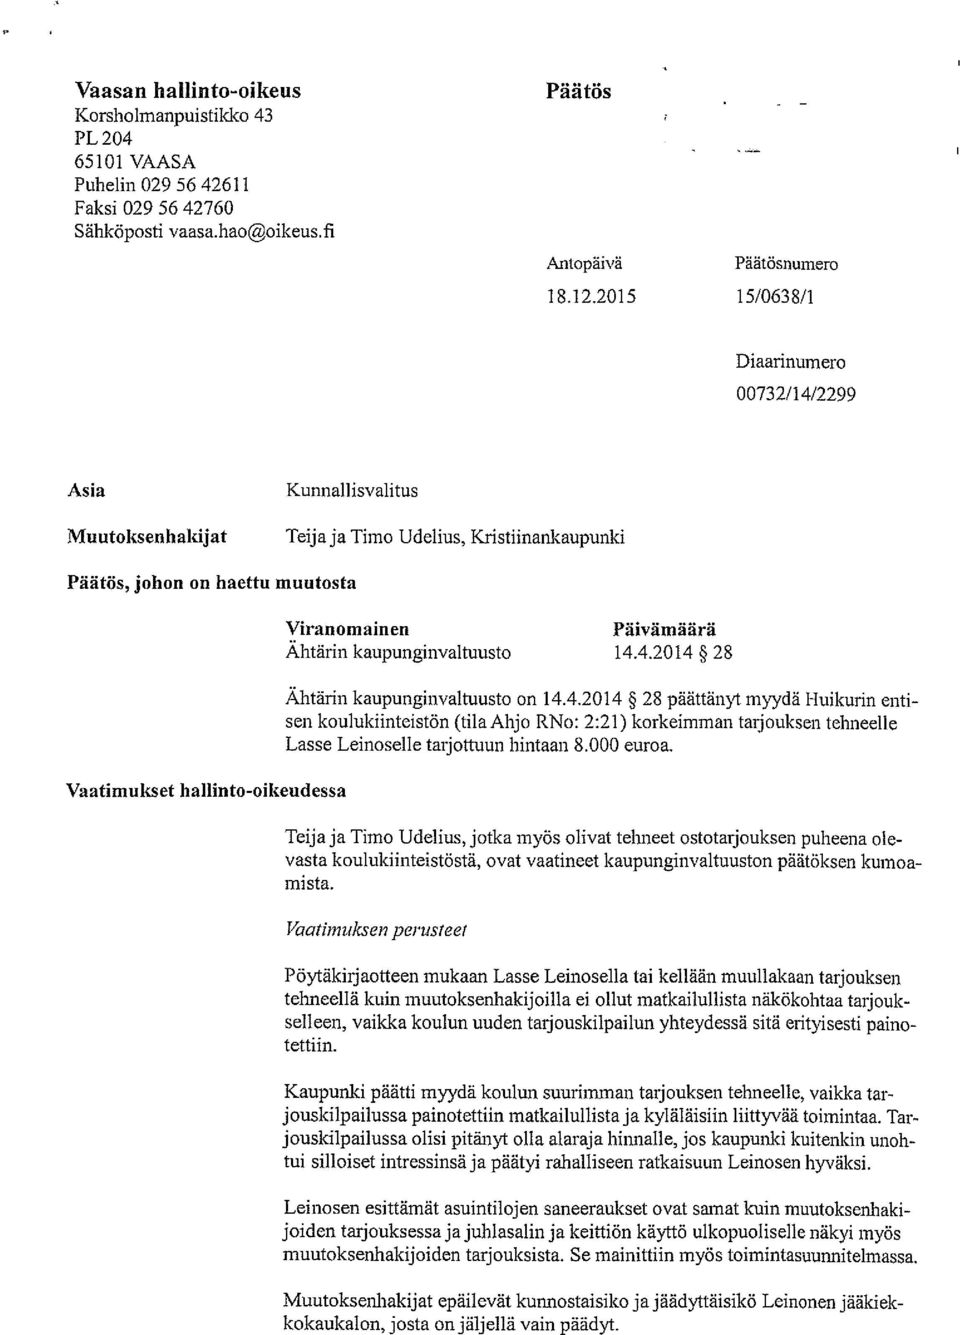 Päivämäärä Ahtärin kaupunginvaltuusto 14.4.2014 28 Ähtärin kaupunginvaltuusto on 14.4.20 14 28 päättänyt myydä Huikurin enti sen koulukiinteistön (tila Ahjo RNo: 2:21) korkeimman tarjouksen tehneelle Lasse Leinoselle tarjottuun hintaan 8.